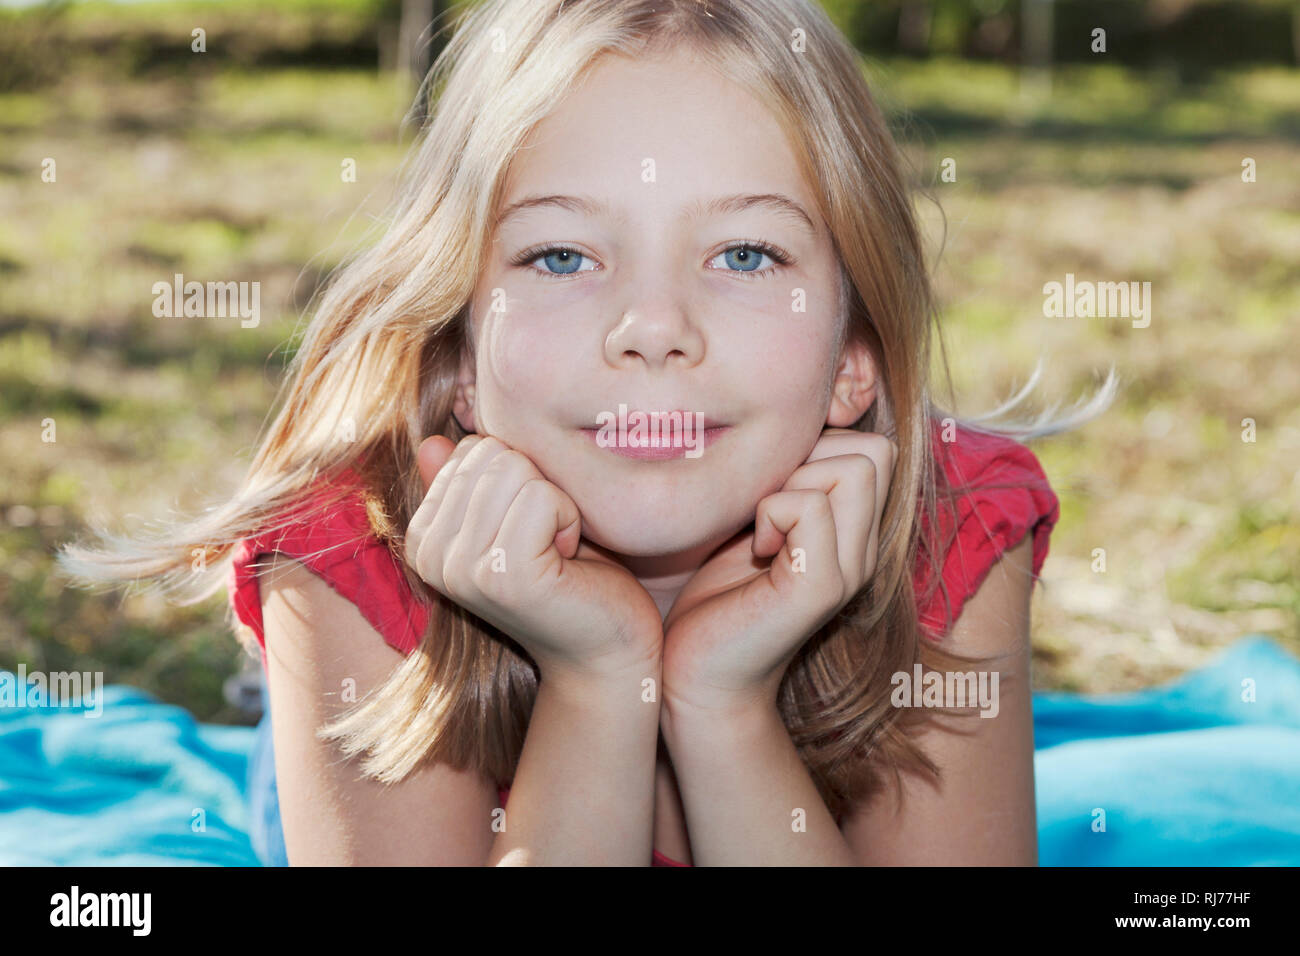 Portrait eines neunjähriges Mädchen auf einer Wiese, Kopf in die Hände gestützt Stock Photo